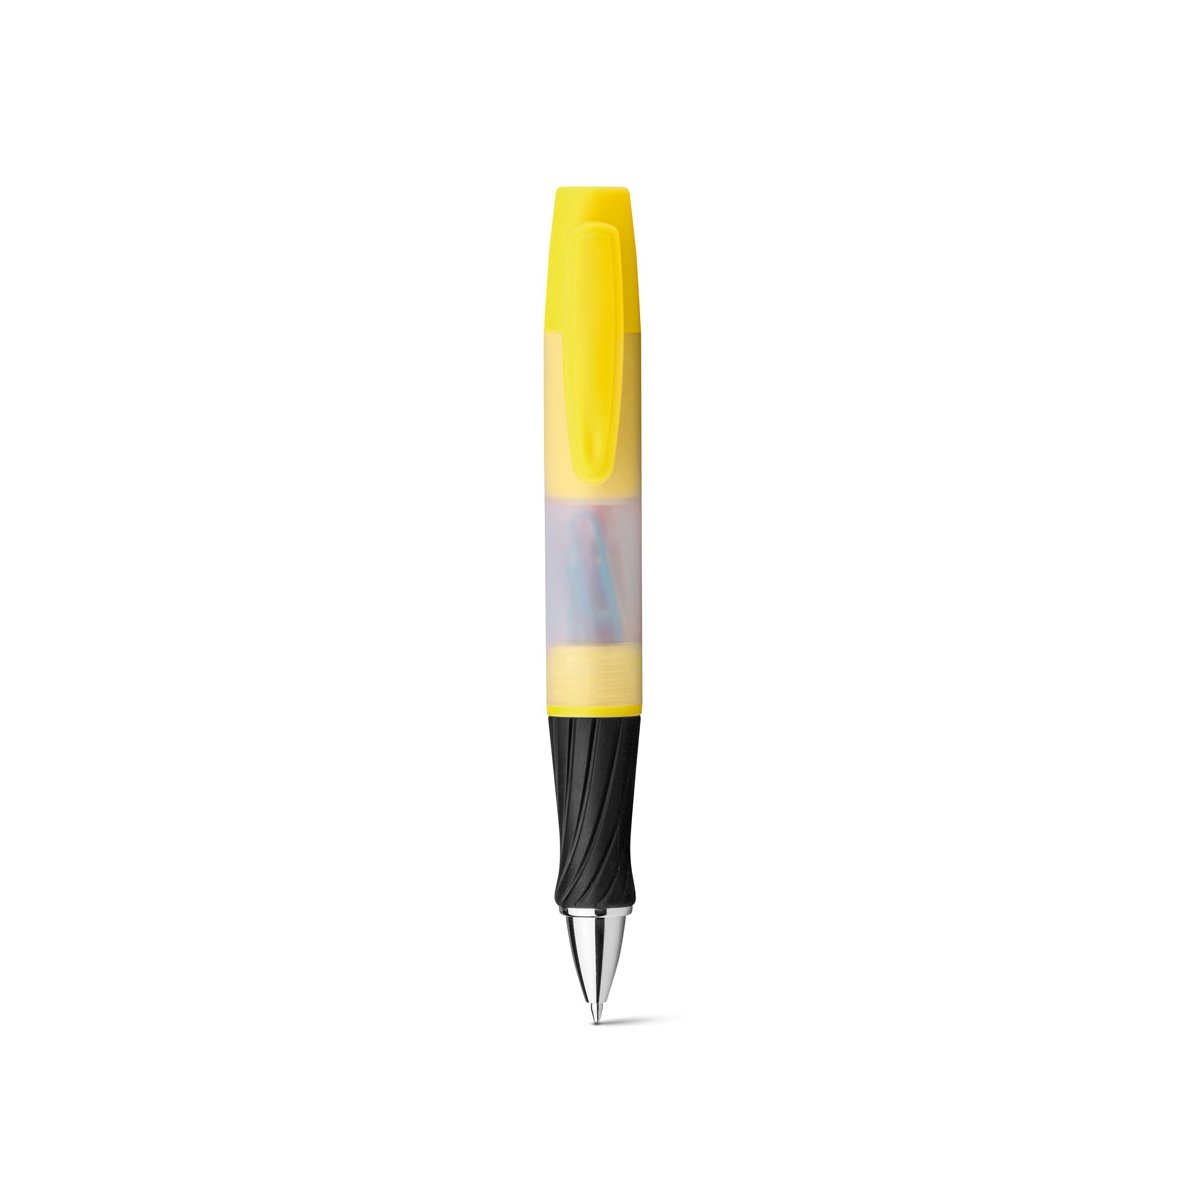 GRAND. Wielofunkcyjny długopis 3 w 1 - Żółty